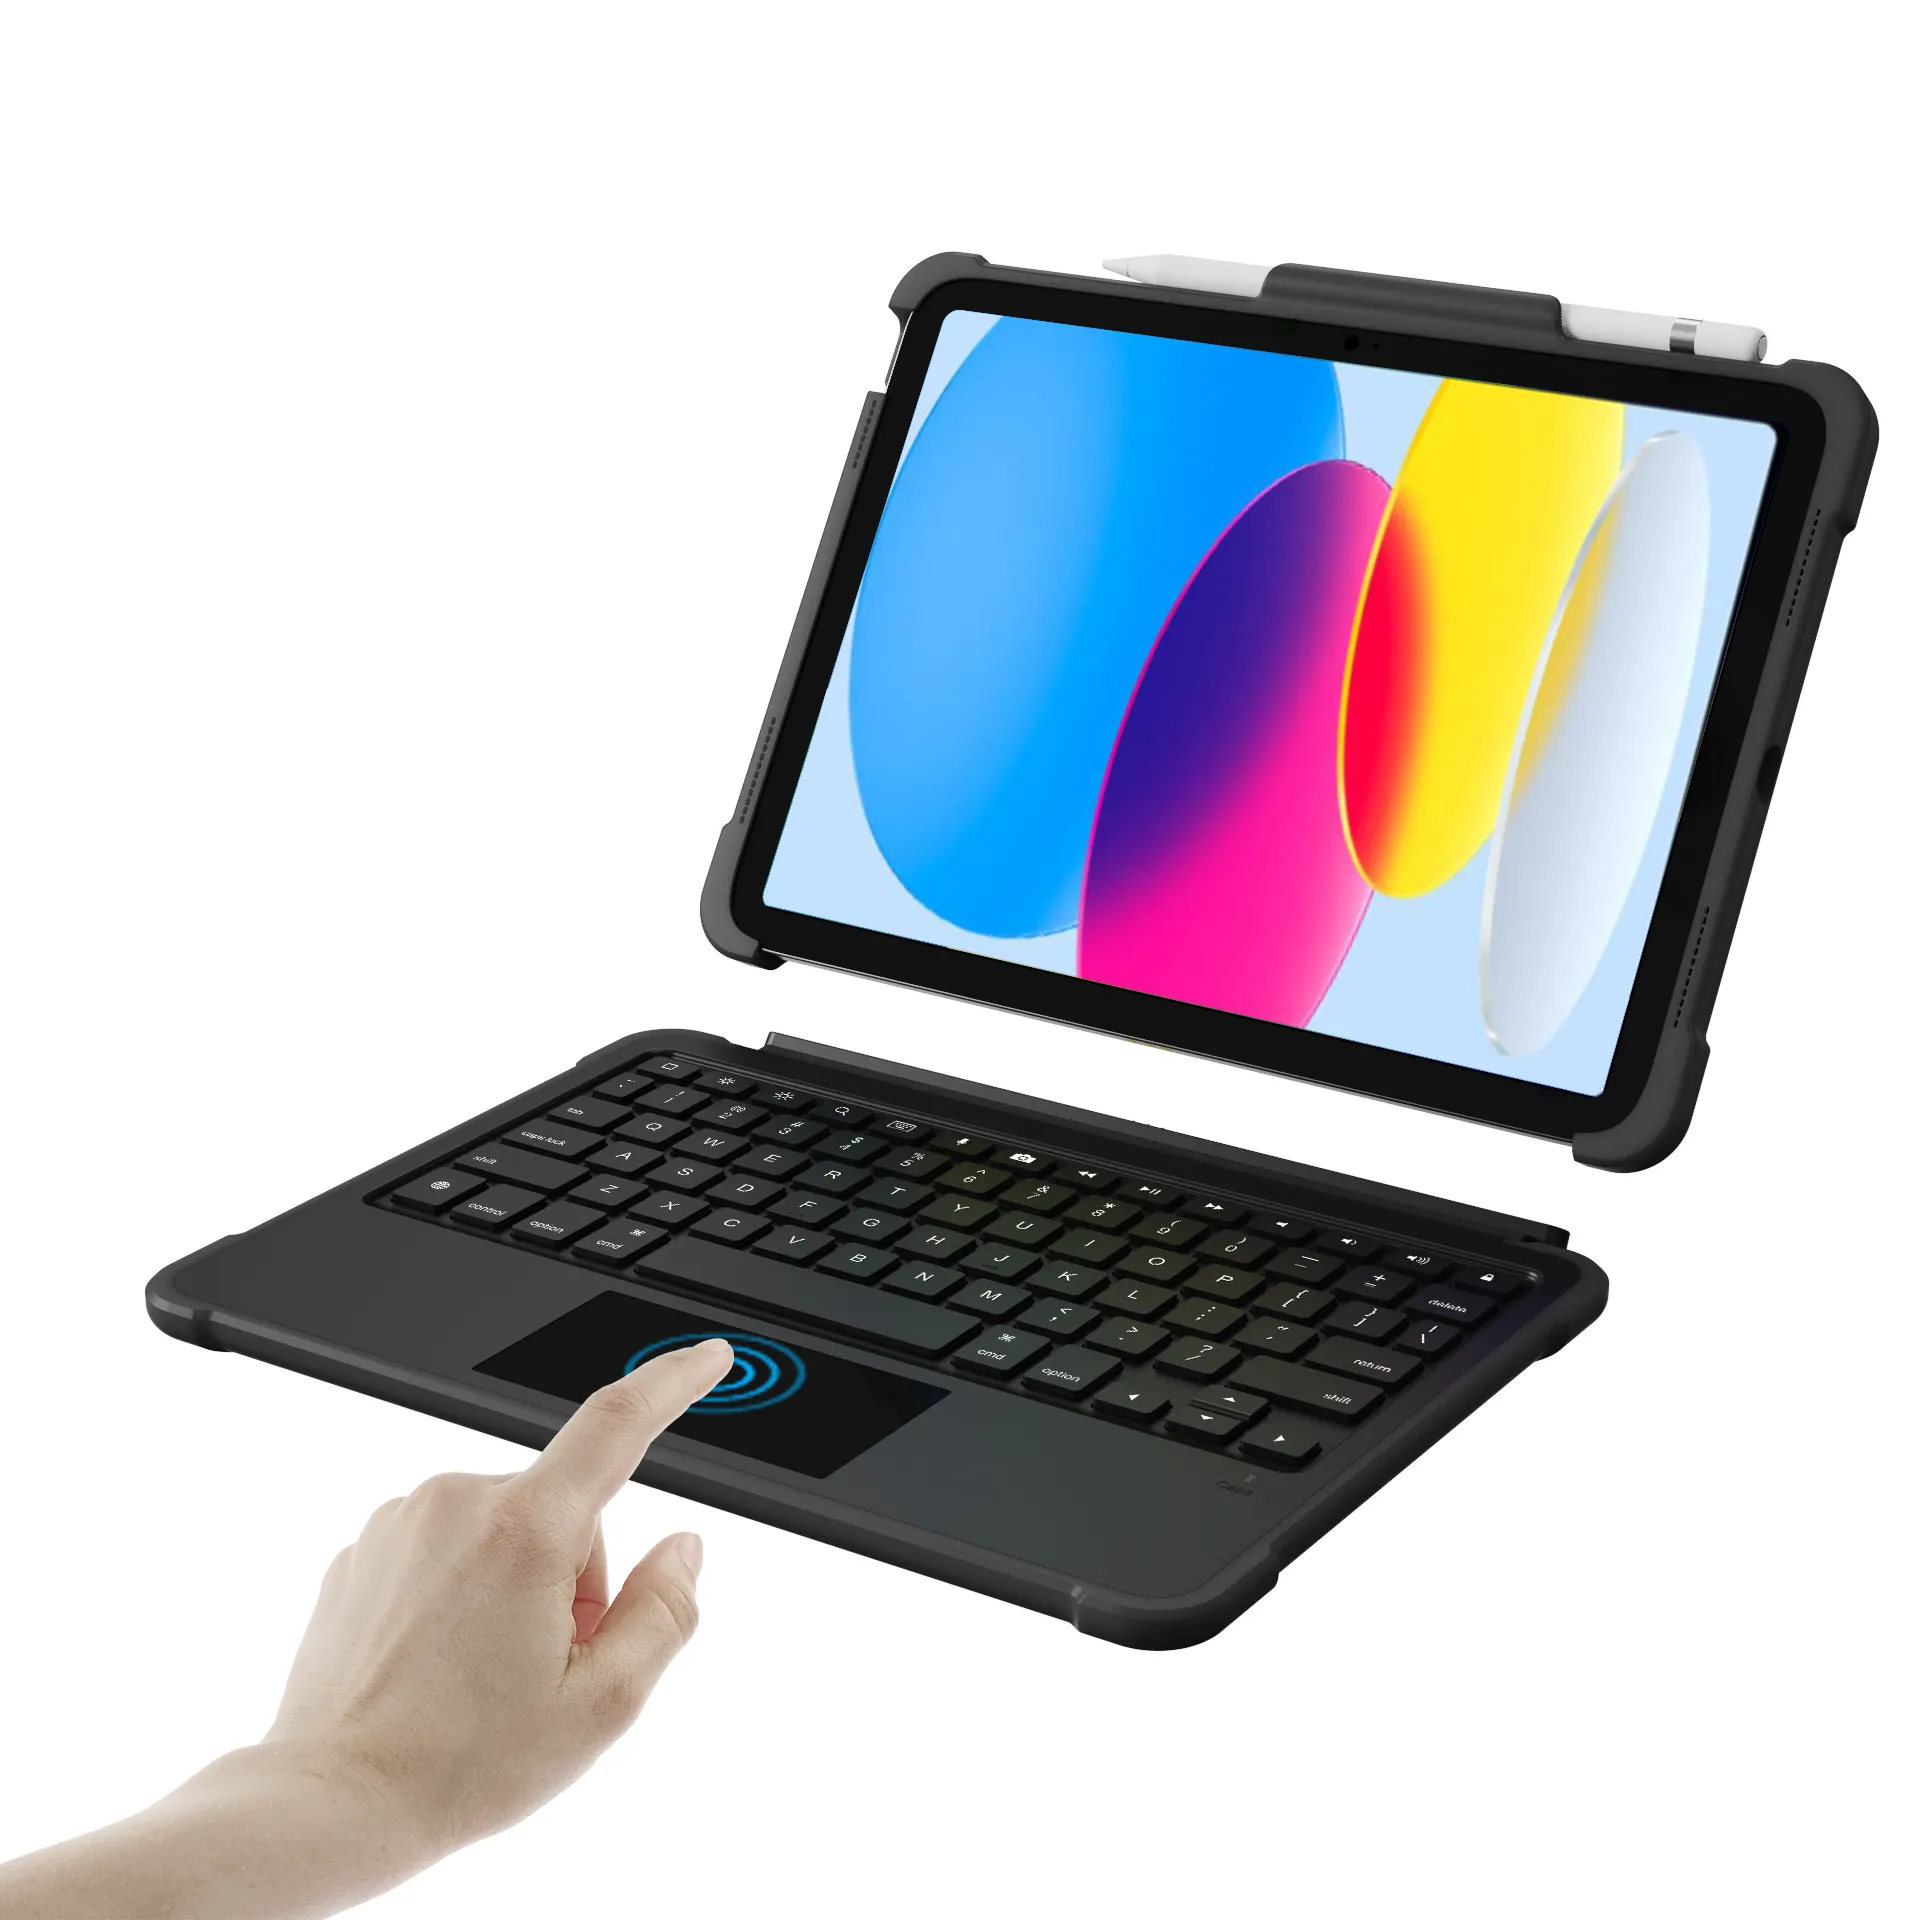 AFY 사용자 정의 OEM ODM 무선 매직 키보드 태블릿 커버 케이스 Ipad Air 4 10th 세대 10.9 인치 애플 터치 패드 키보드 케이스 2022